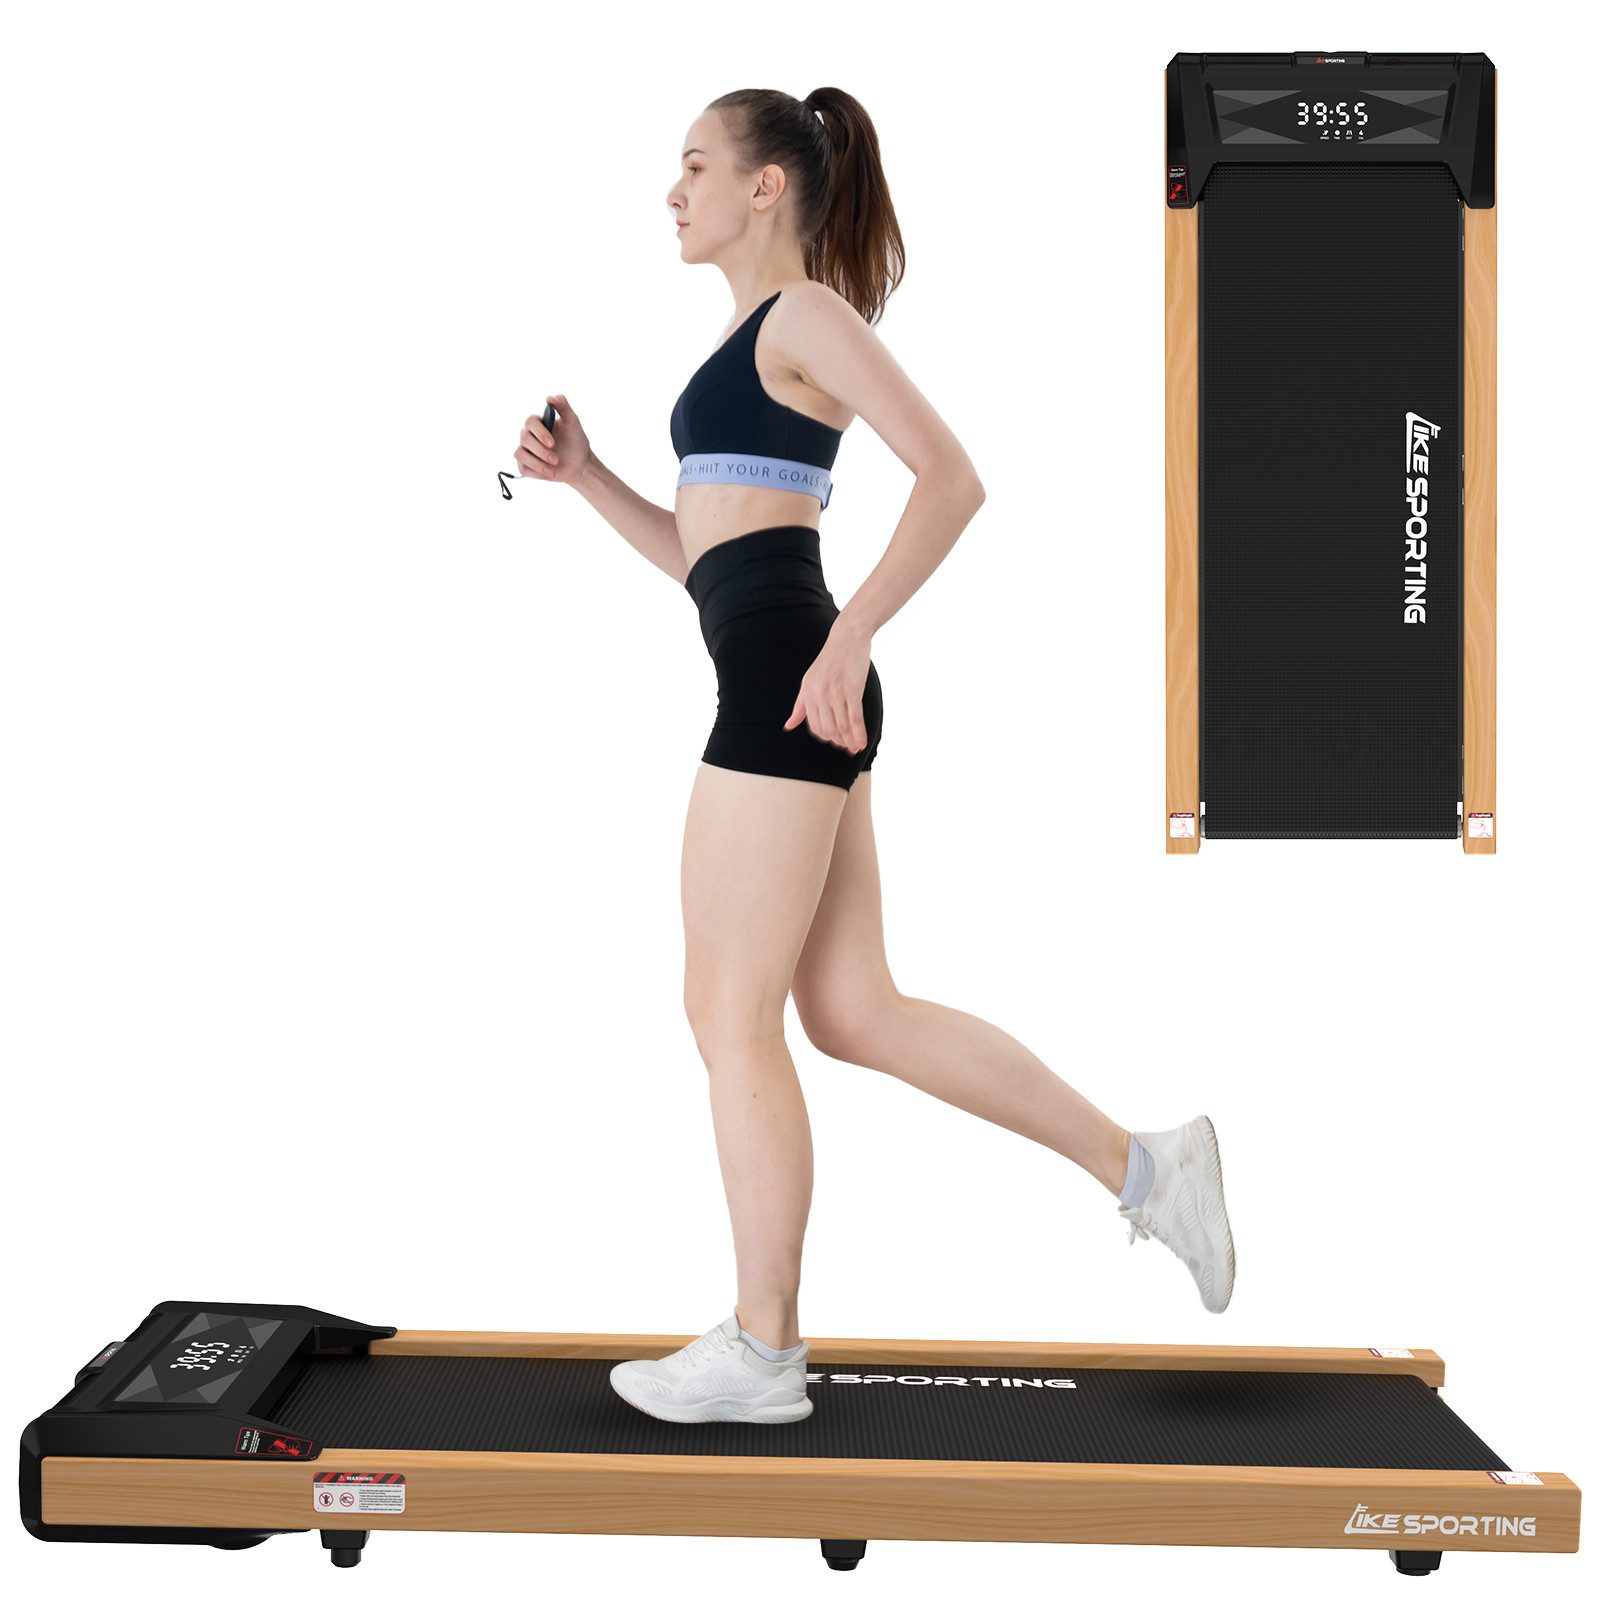 CITYSPORTS Laufband Likesporting 550W Treadmill mit Bluetooth für Zuhause und im Büro, 1-6km/h Walking/jogging Pad mit LED-Anzeige und Fernbedienung